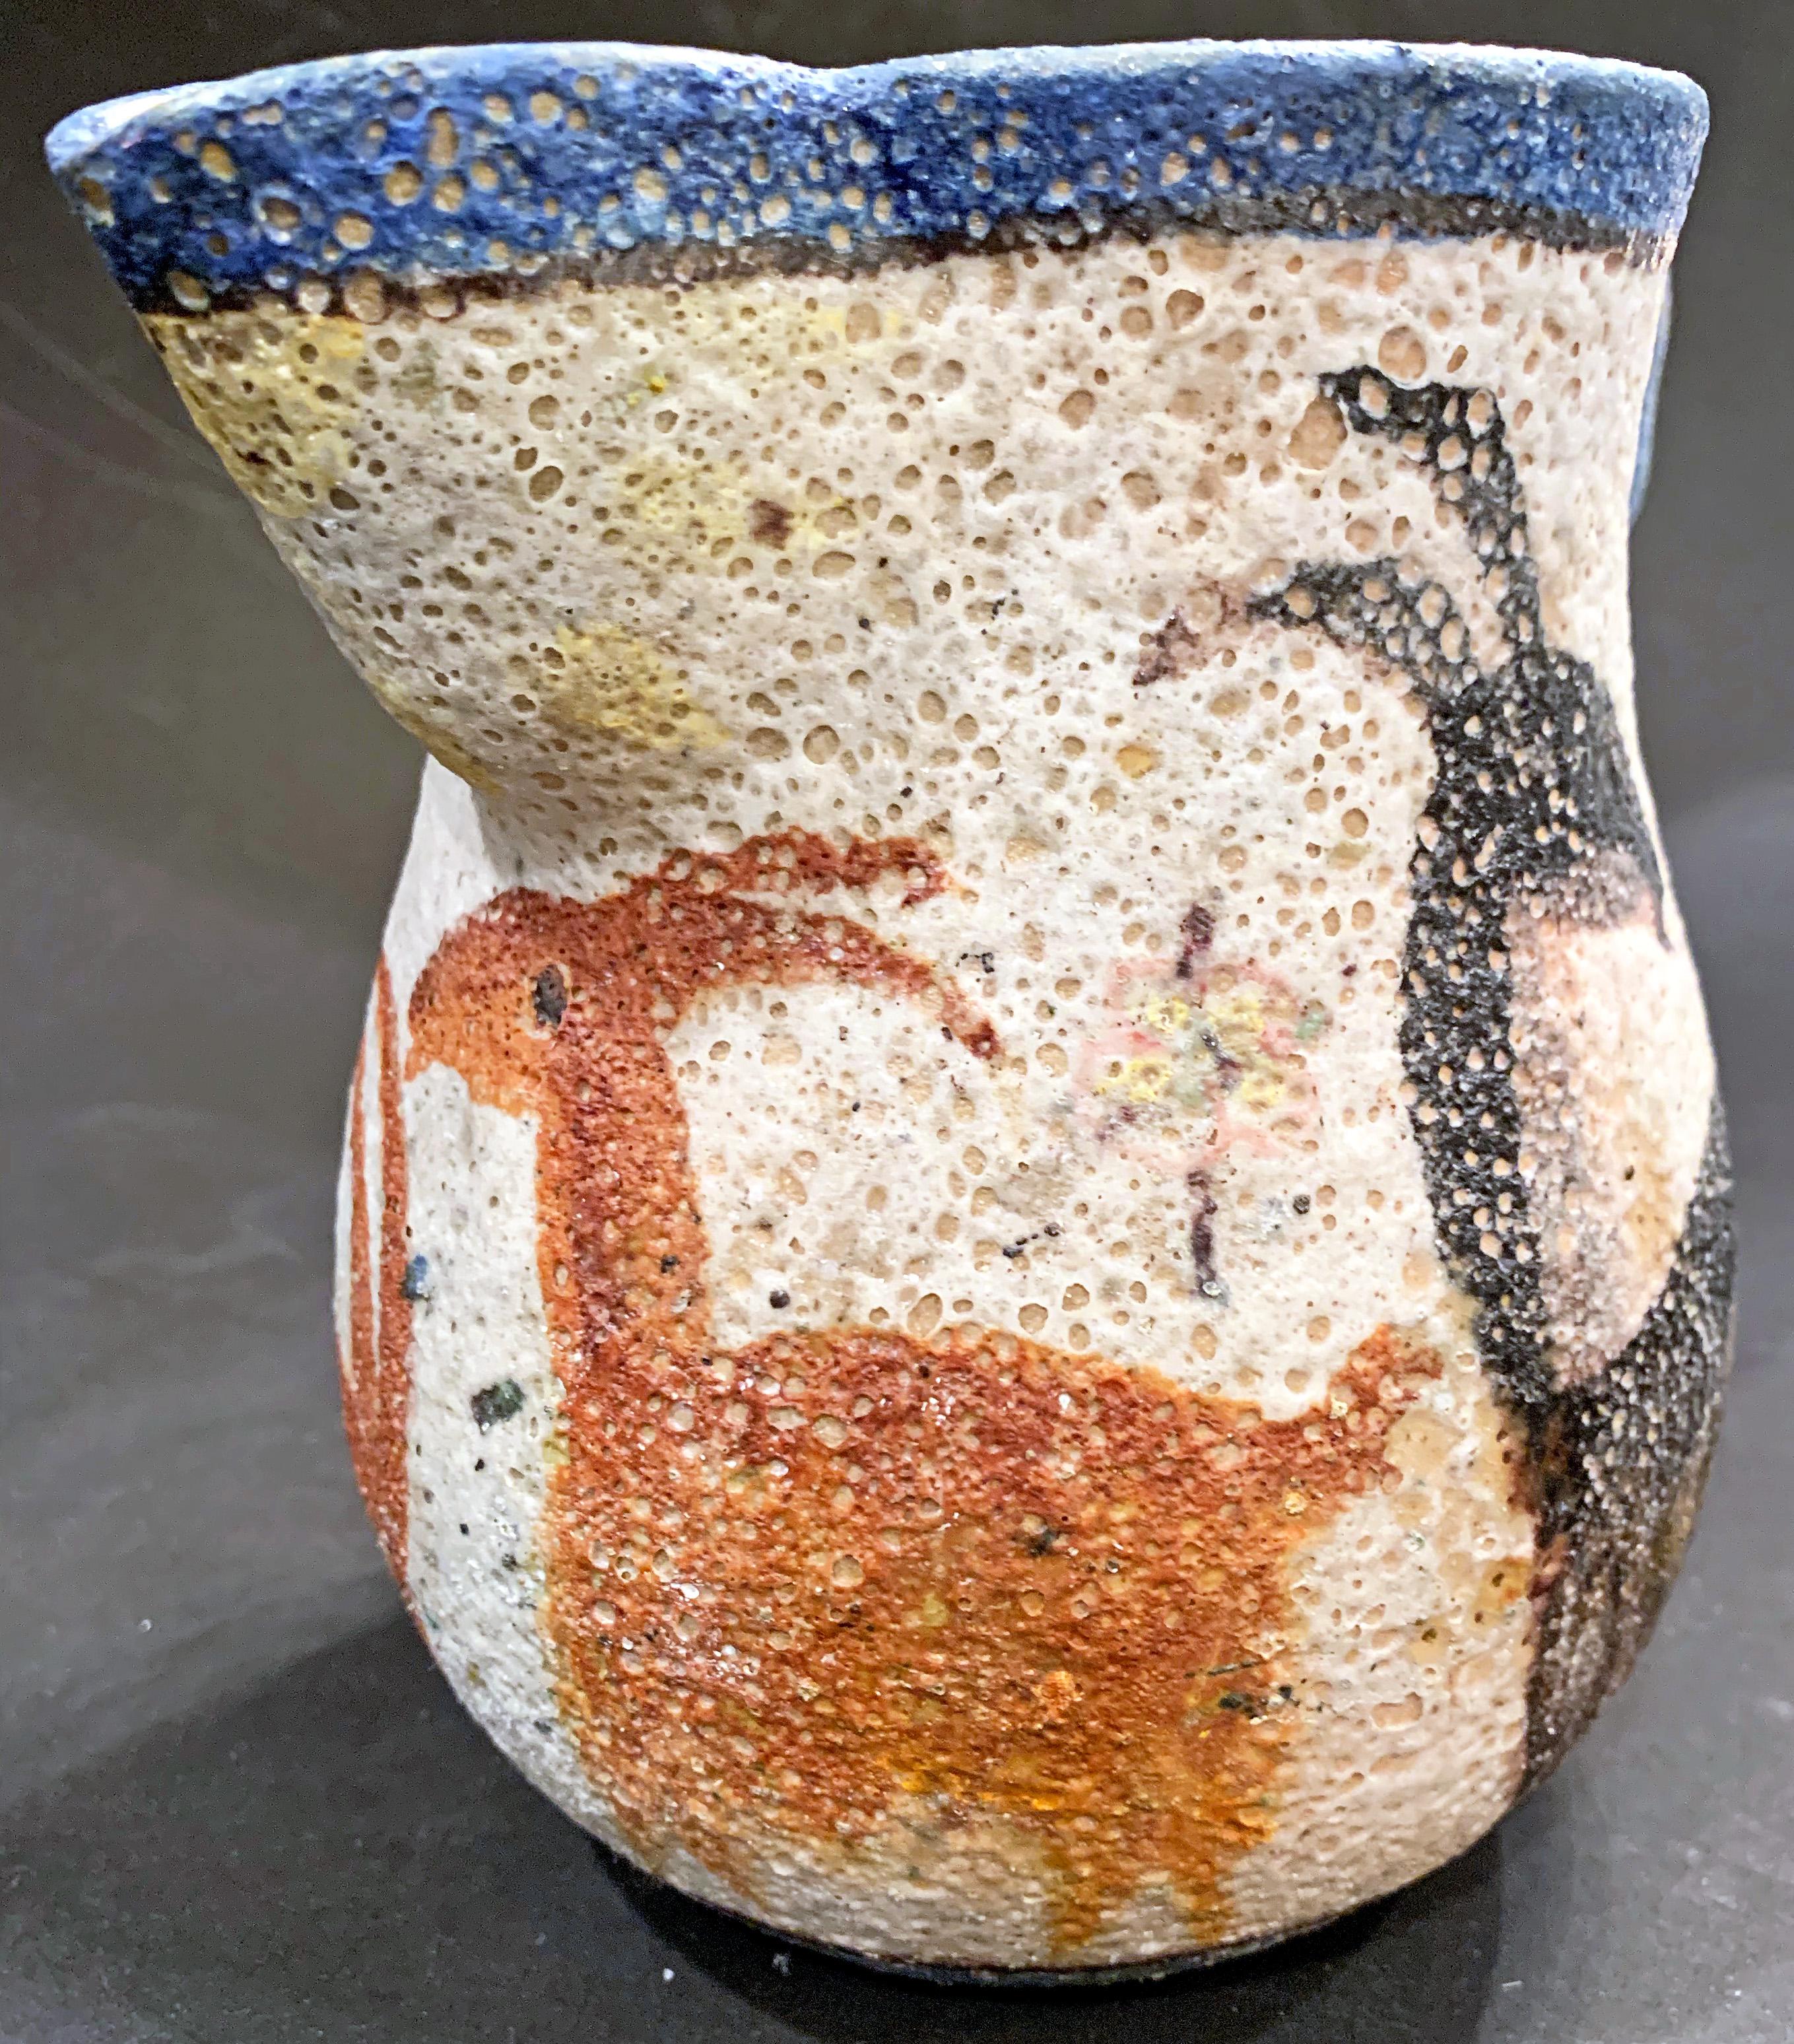 Dieser atemberaubende, bedeutende Krug von Industria Ceramica Salernita (I.C.S.), der eine Parade von Ziegen in sprudelnden, vulkanischen Glasuren zeigt, wurde wahrscheinlich in den späten 1930er Jahren entworfen, als Guido Gambone der künstlerische